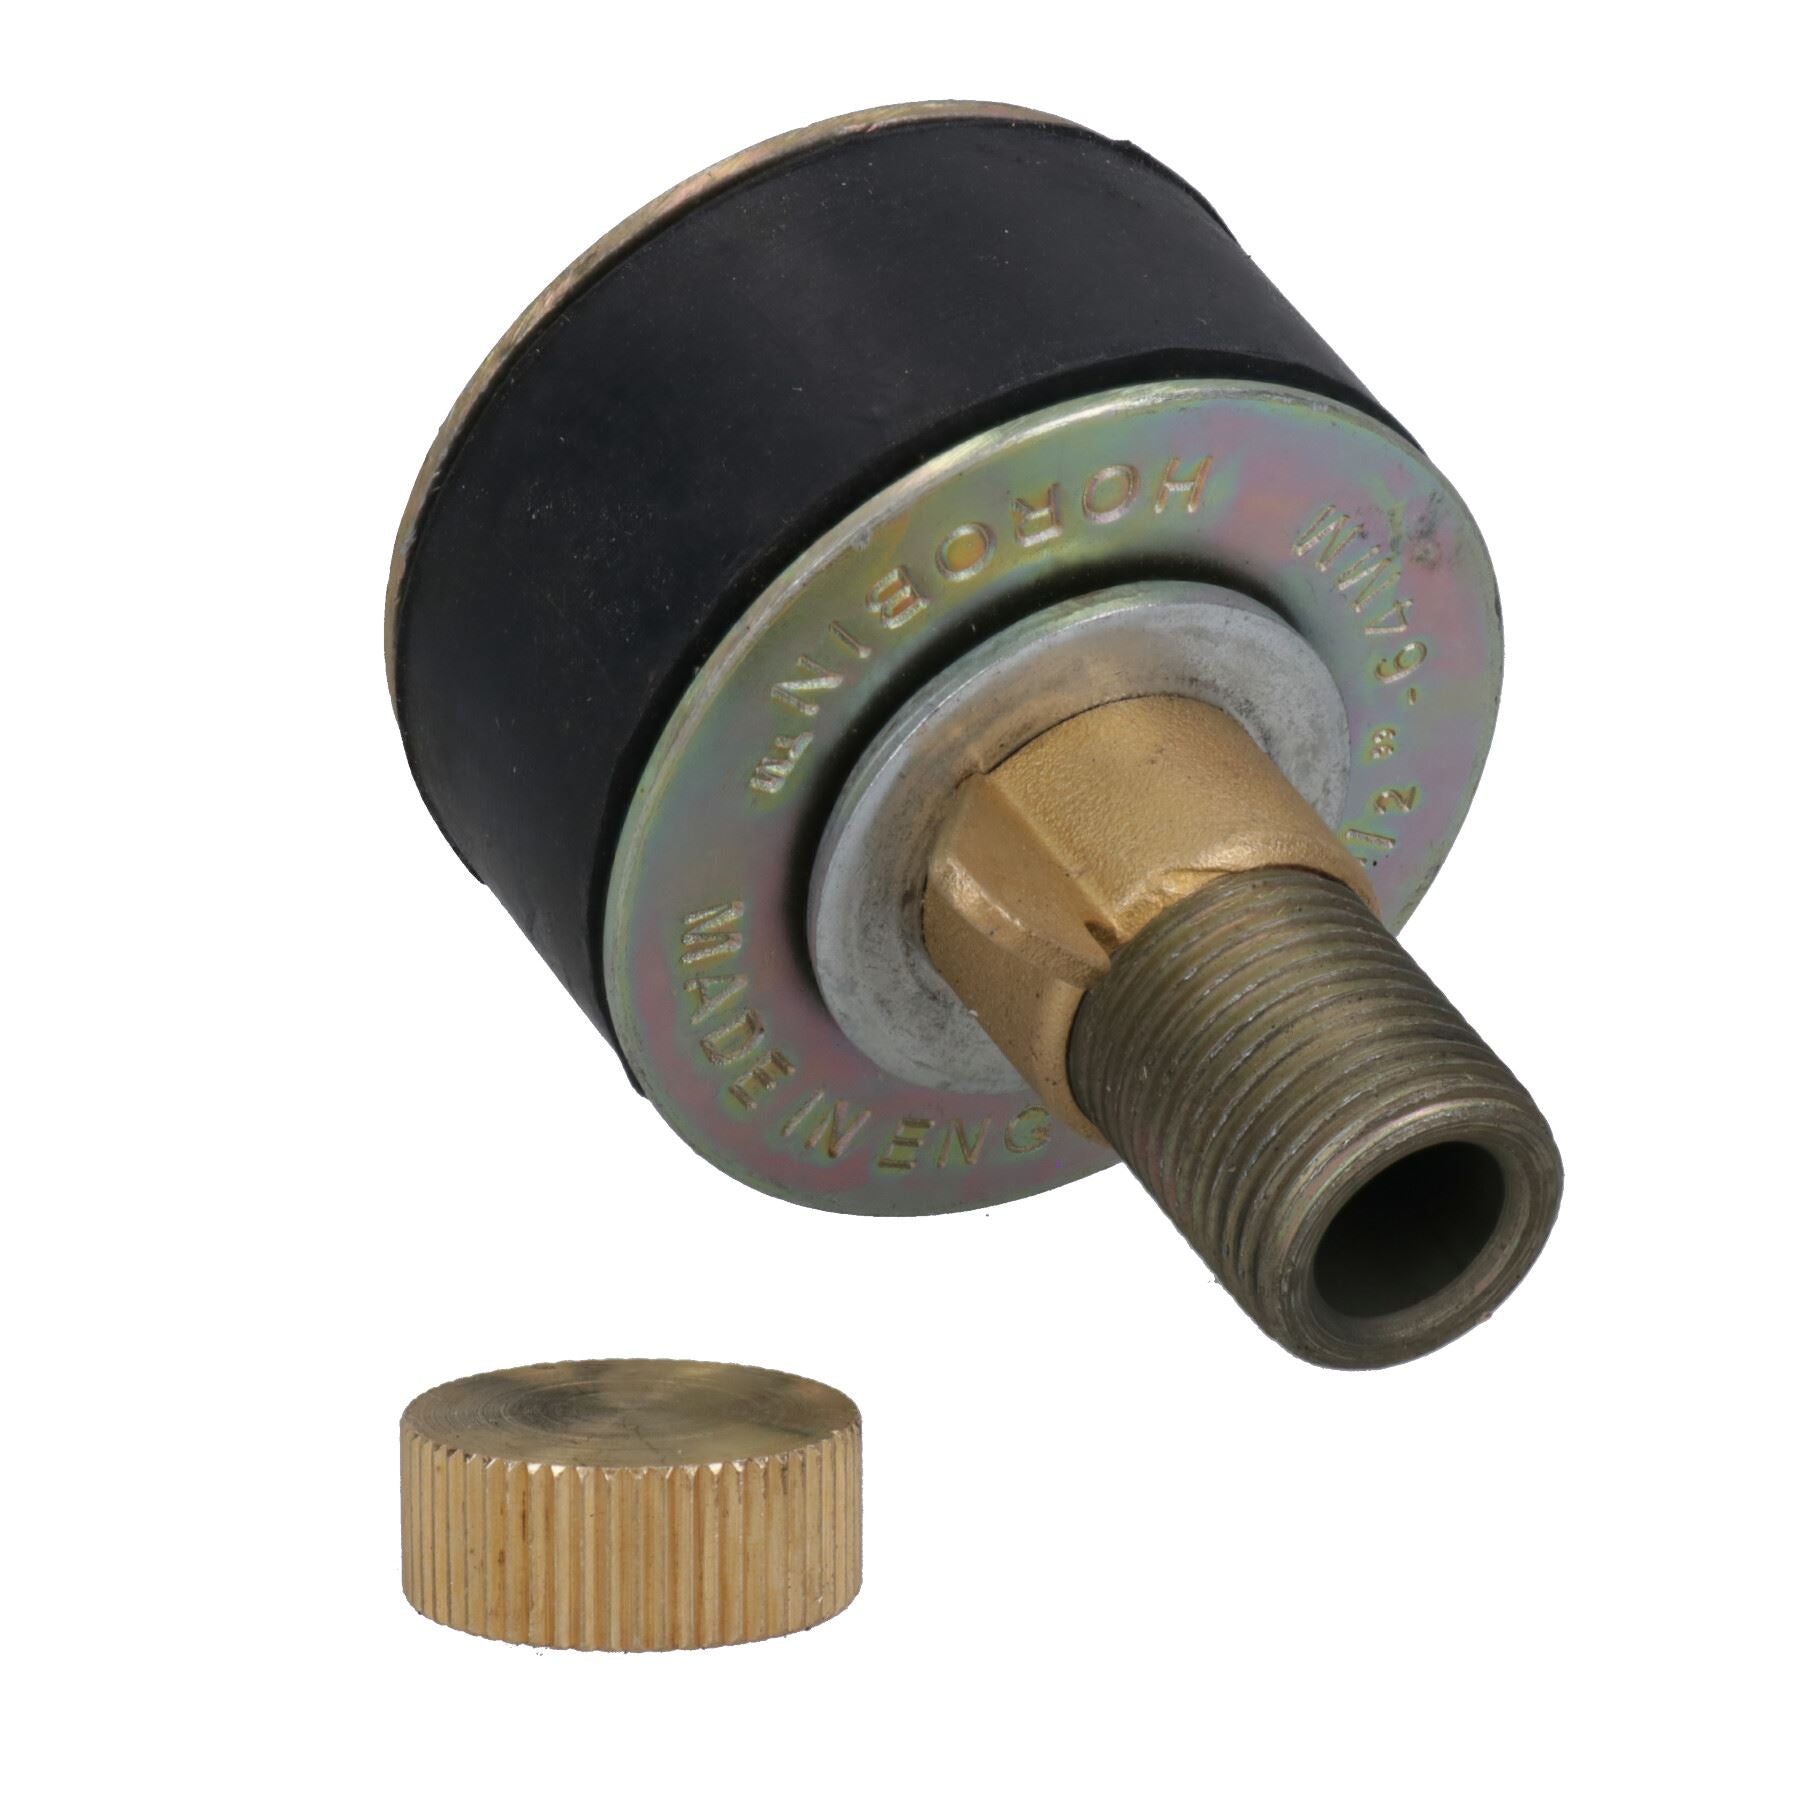 Steel Drain Test Pipe Bung / Plug 1-1/2" - 12" (40-300mm) Plumbing Stop Blanking